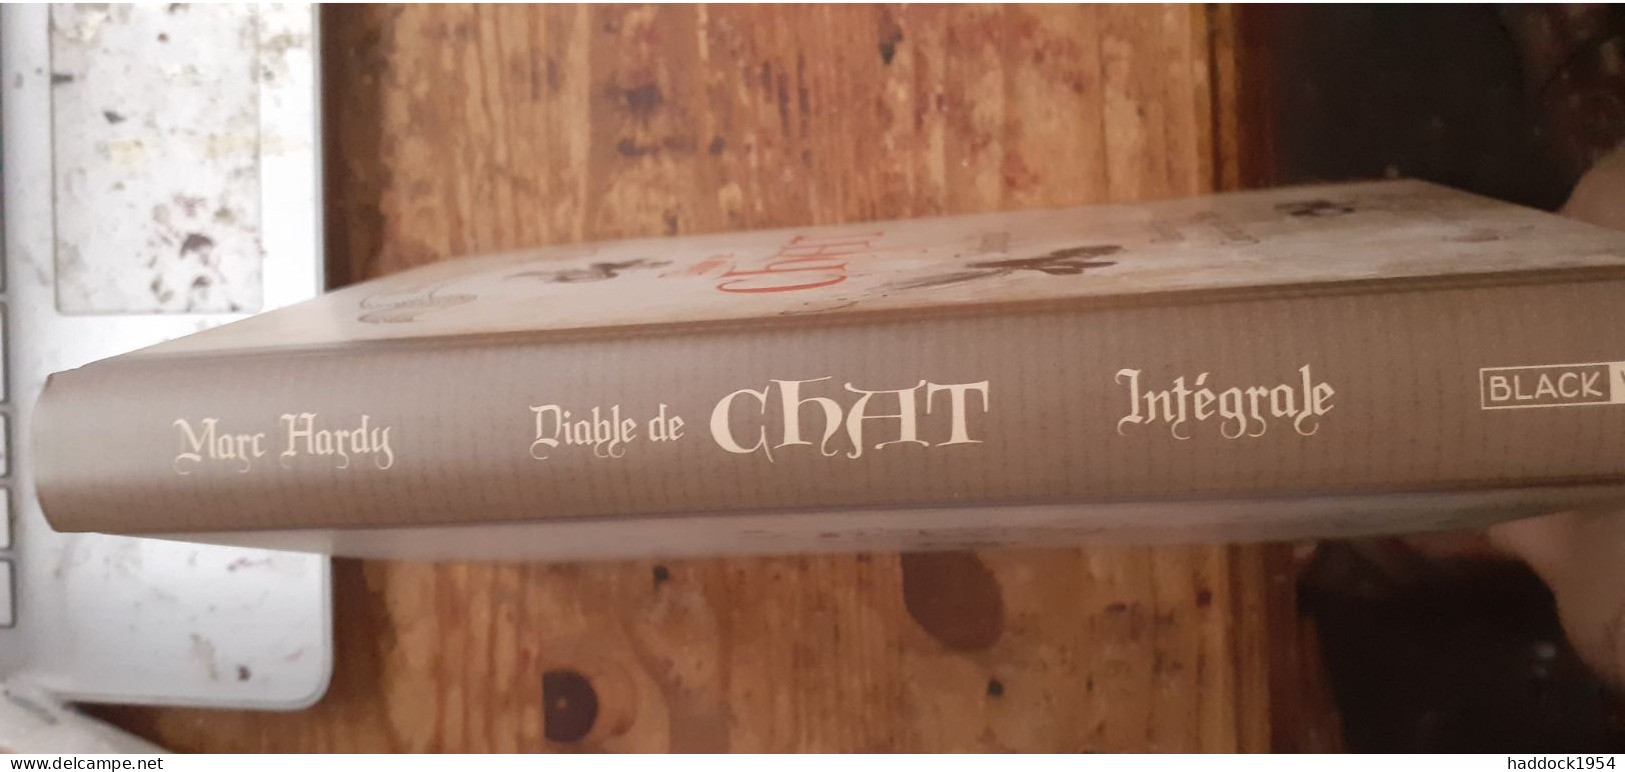 Diable De Chat Intégrale MARC HARDY Black Et White éditions 2019 - Erstausgaben